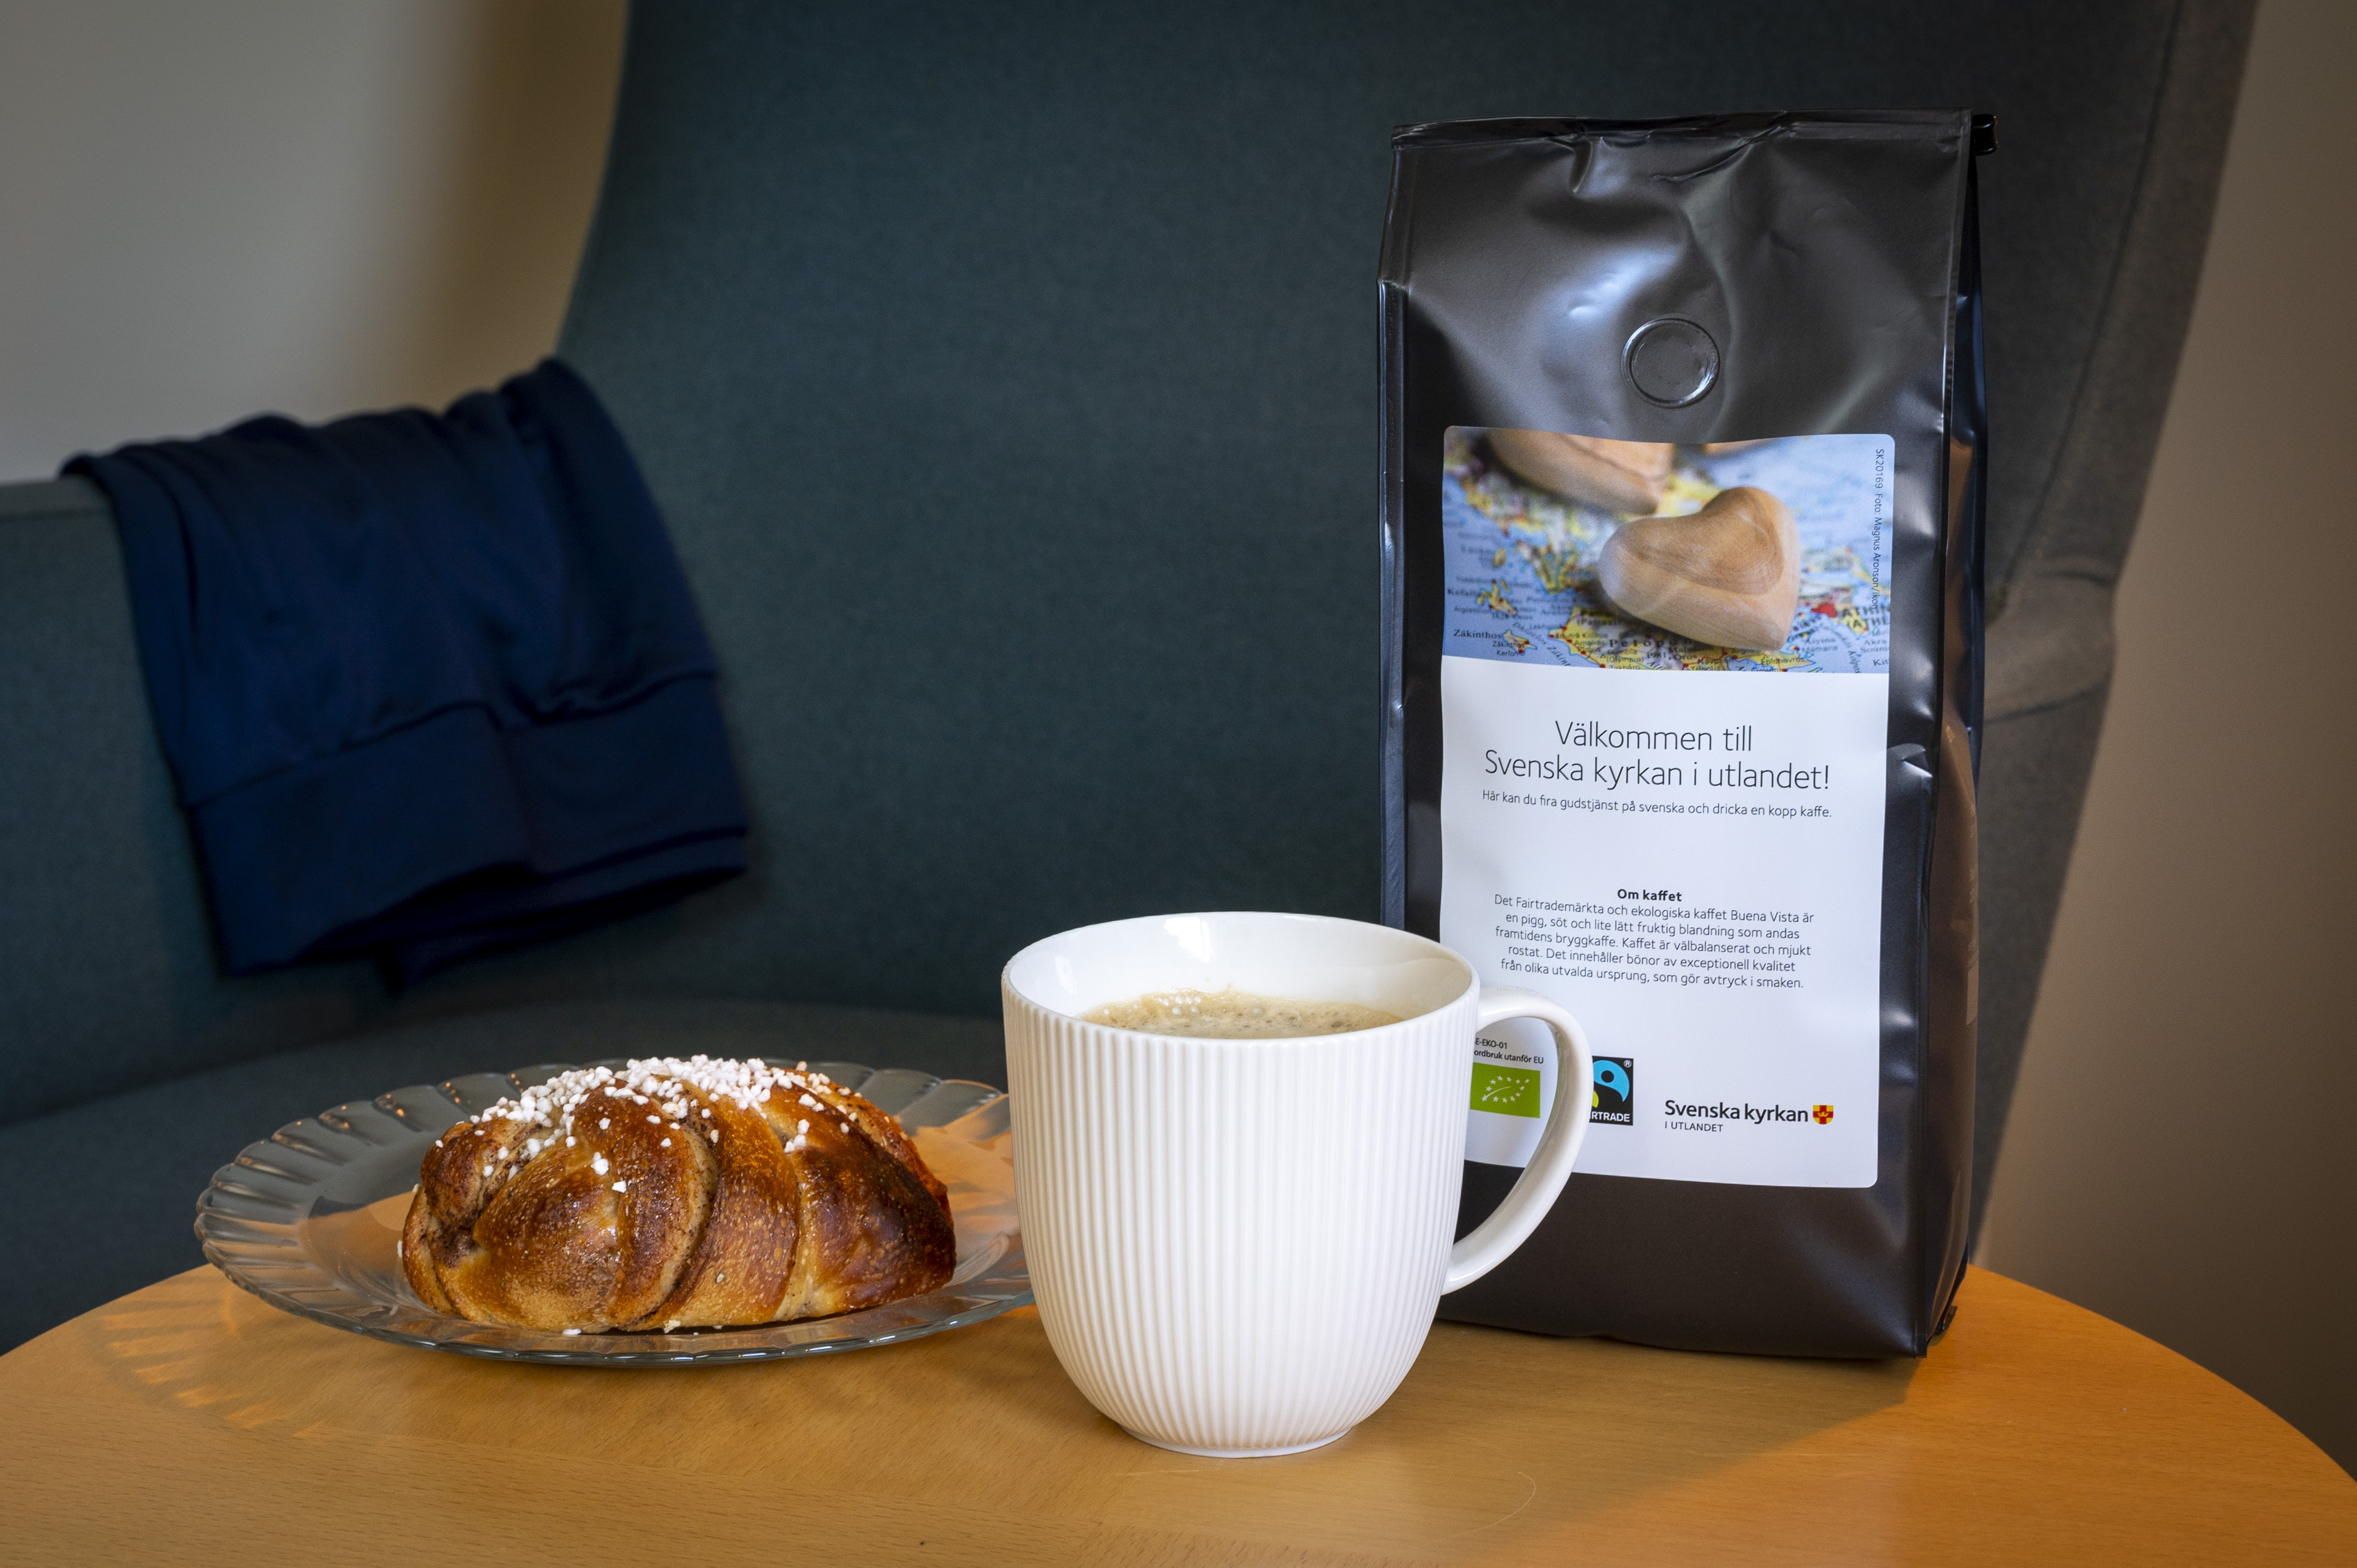 En kaffekopp, en kanelbulle och en påse med kaffe från Svenska kyrkan står på ett bord.